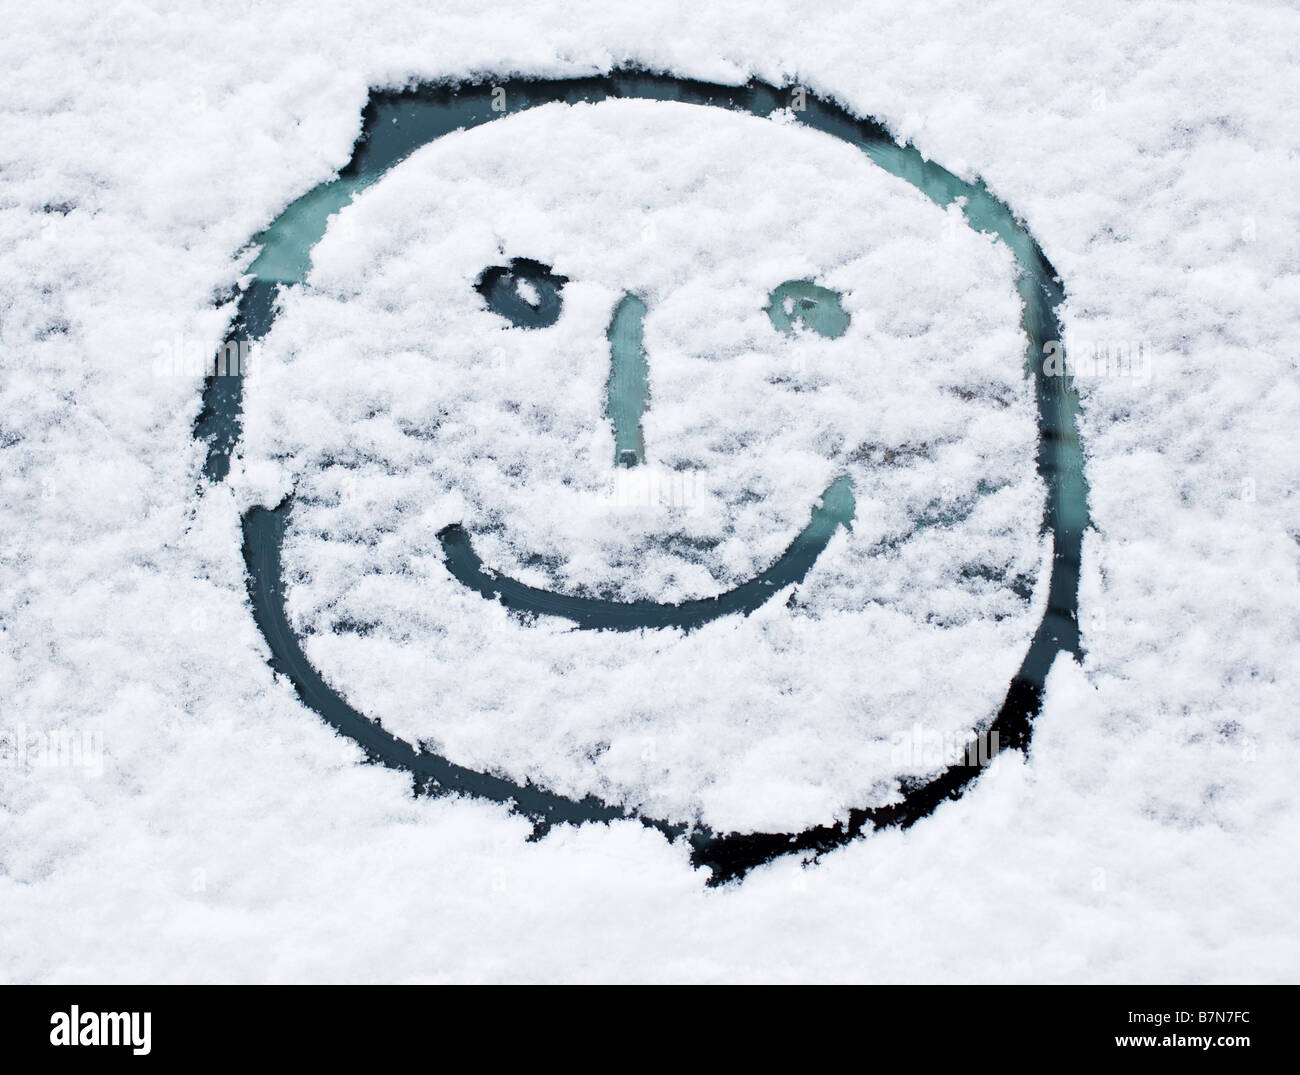 Neige de l'hiver - Smiley dessiné dans la neige fraîche sur un pare-brise de voiture Banque D'Images